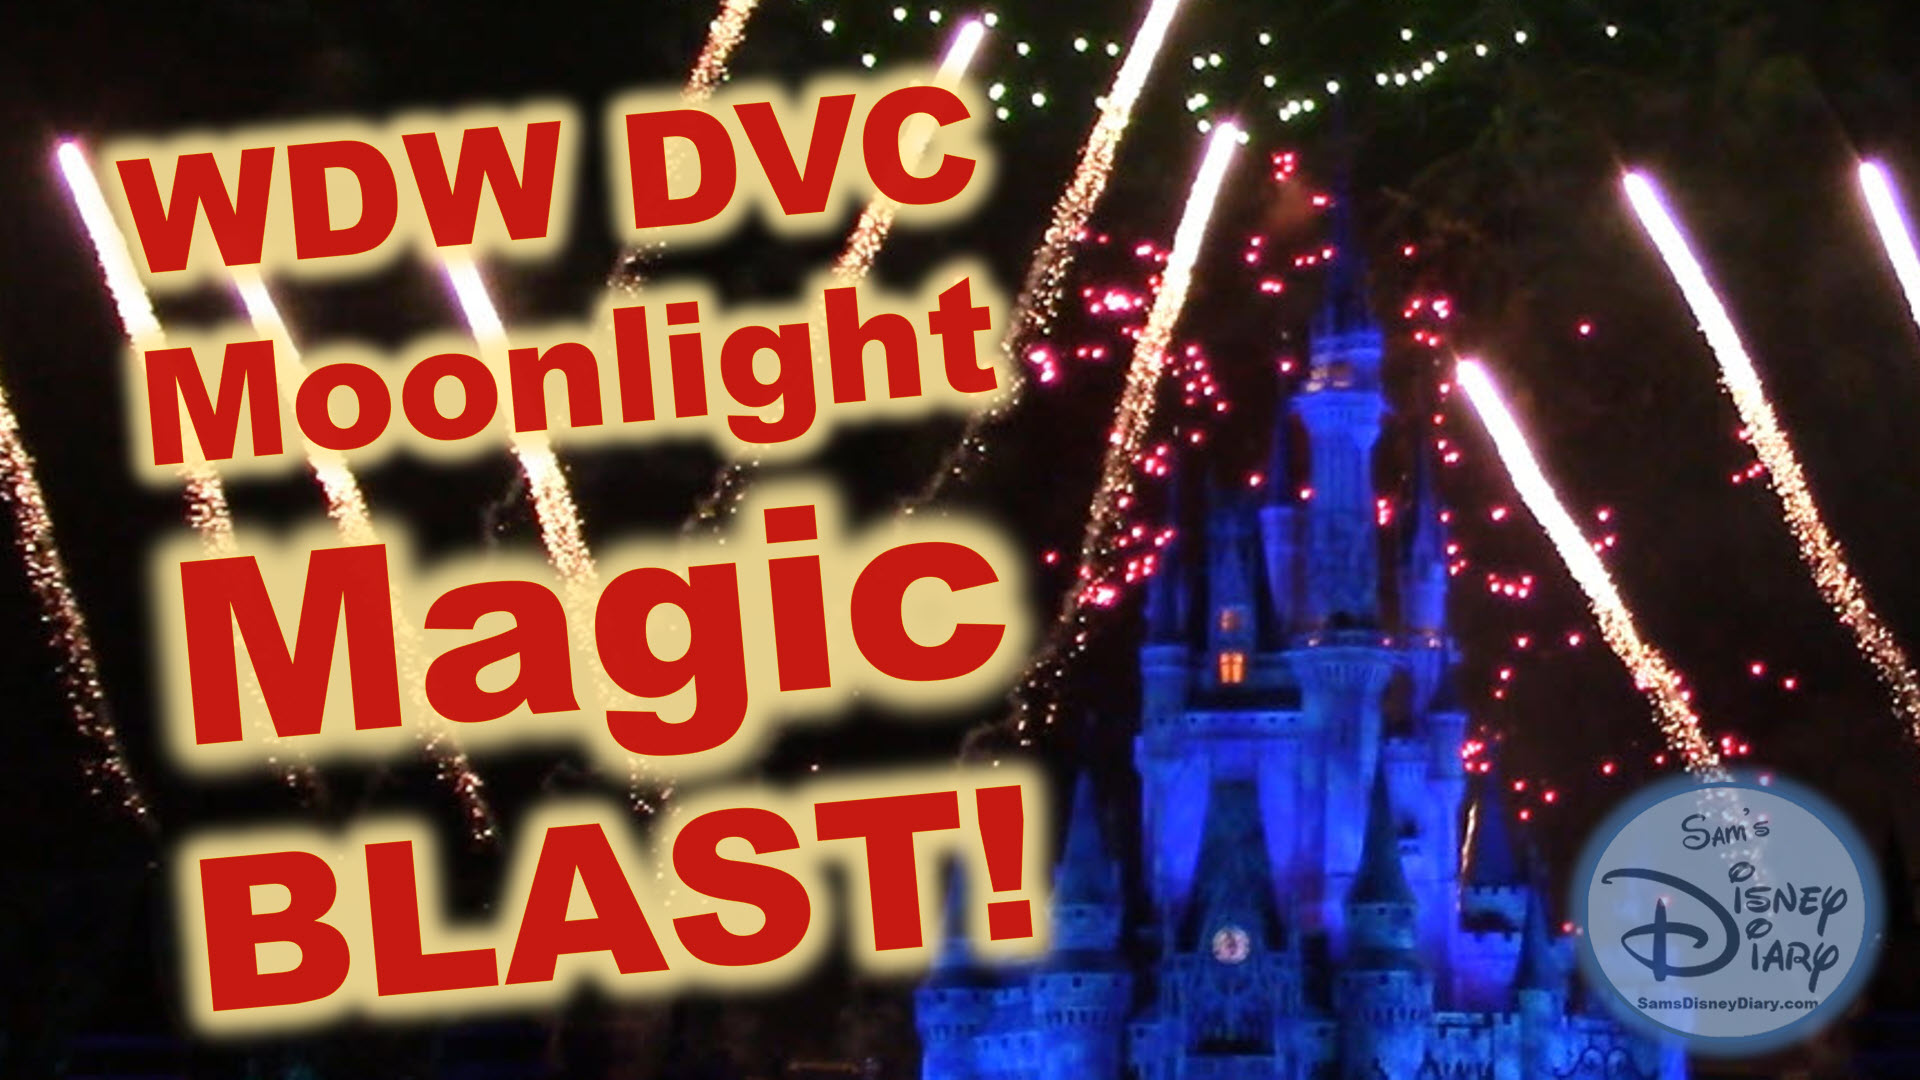 Walt Disney World Moonlight Magic Blast Magic Kingdom DVC